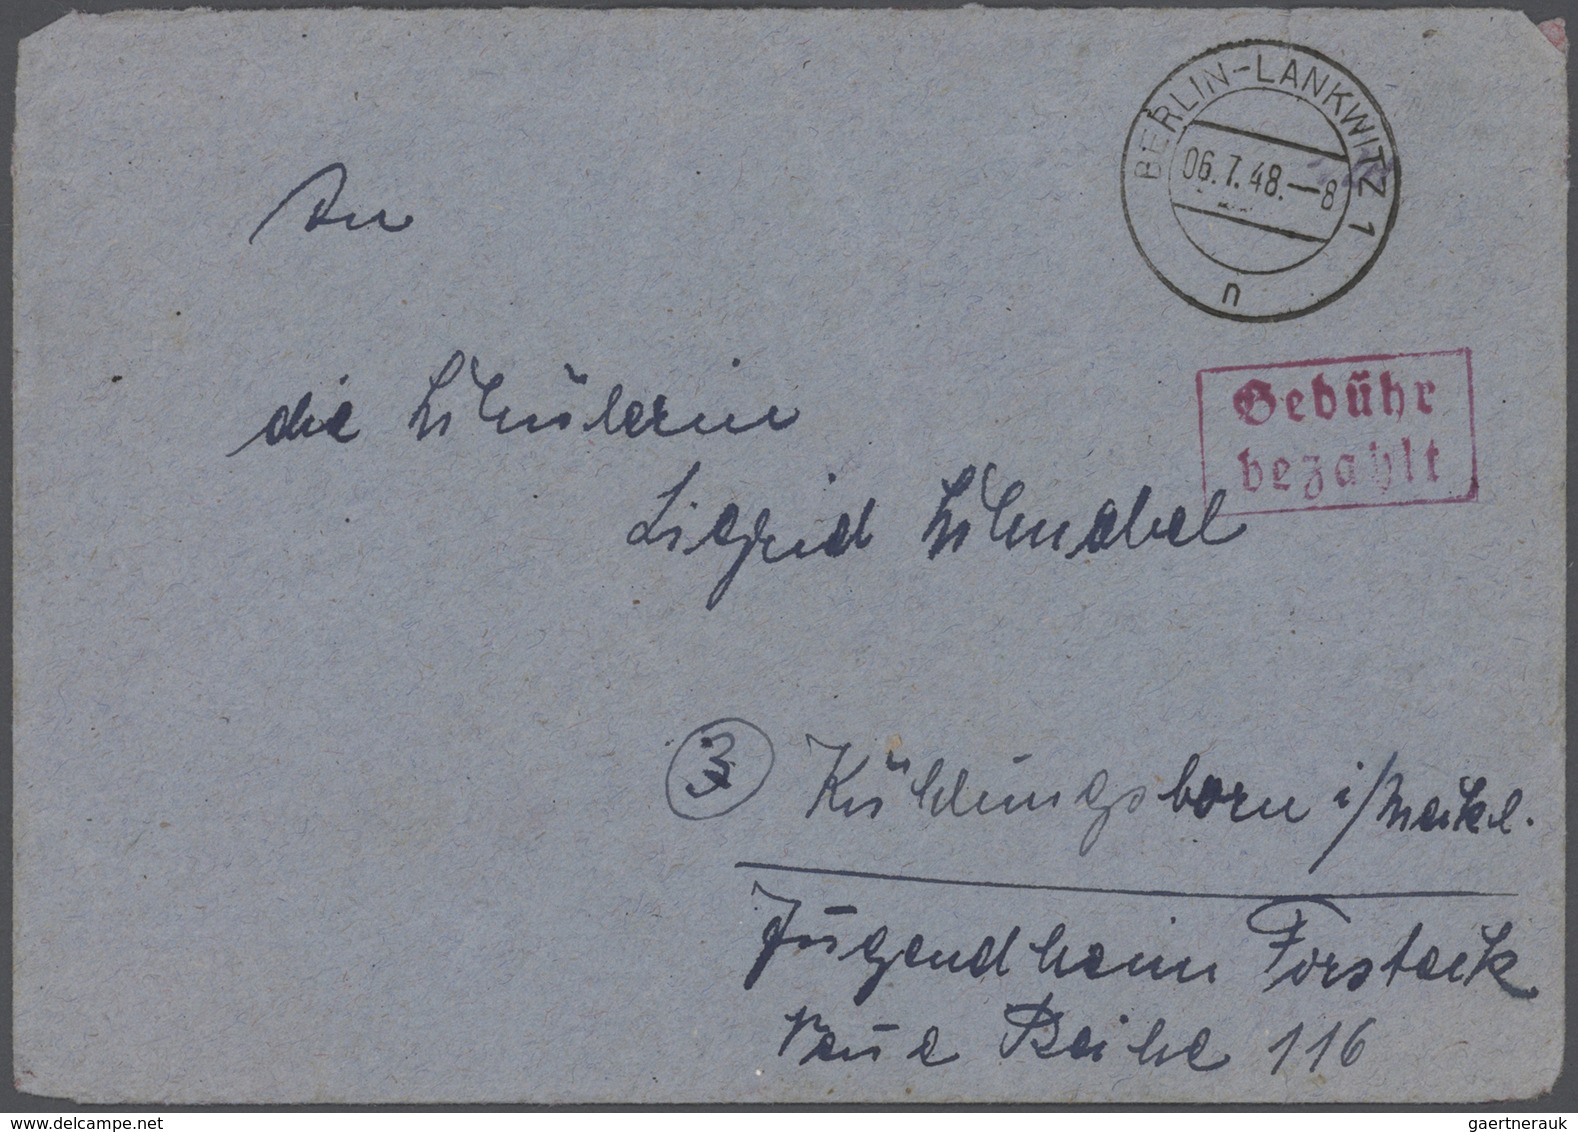 Berlin - Vorläufer: 1948-1949, Währungsreform, wohl einmalige Sammlung mit rund 250 Briefen und Bele